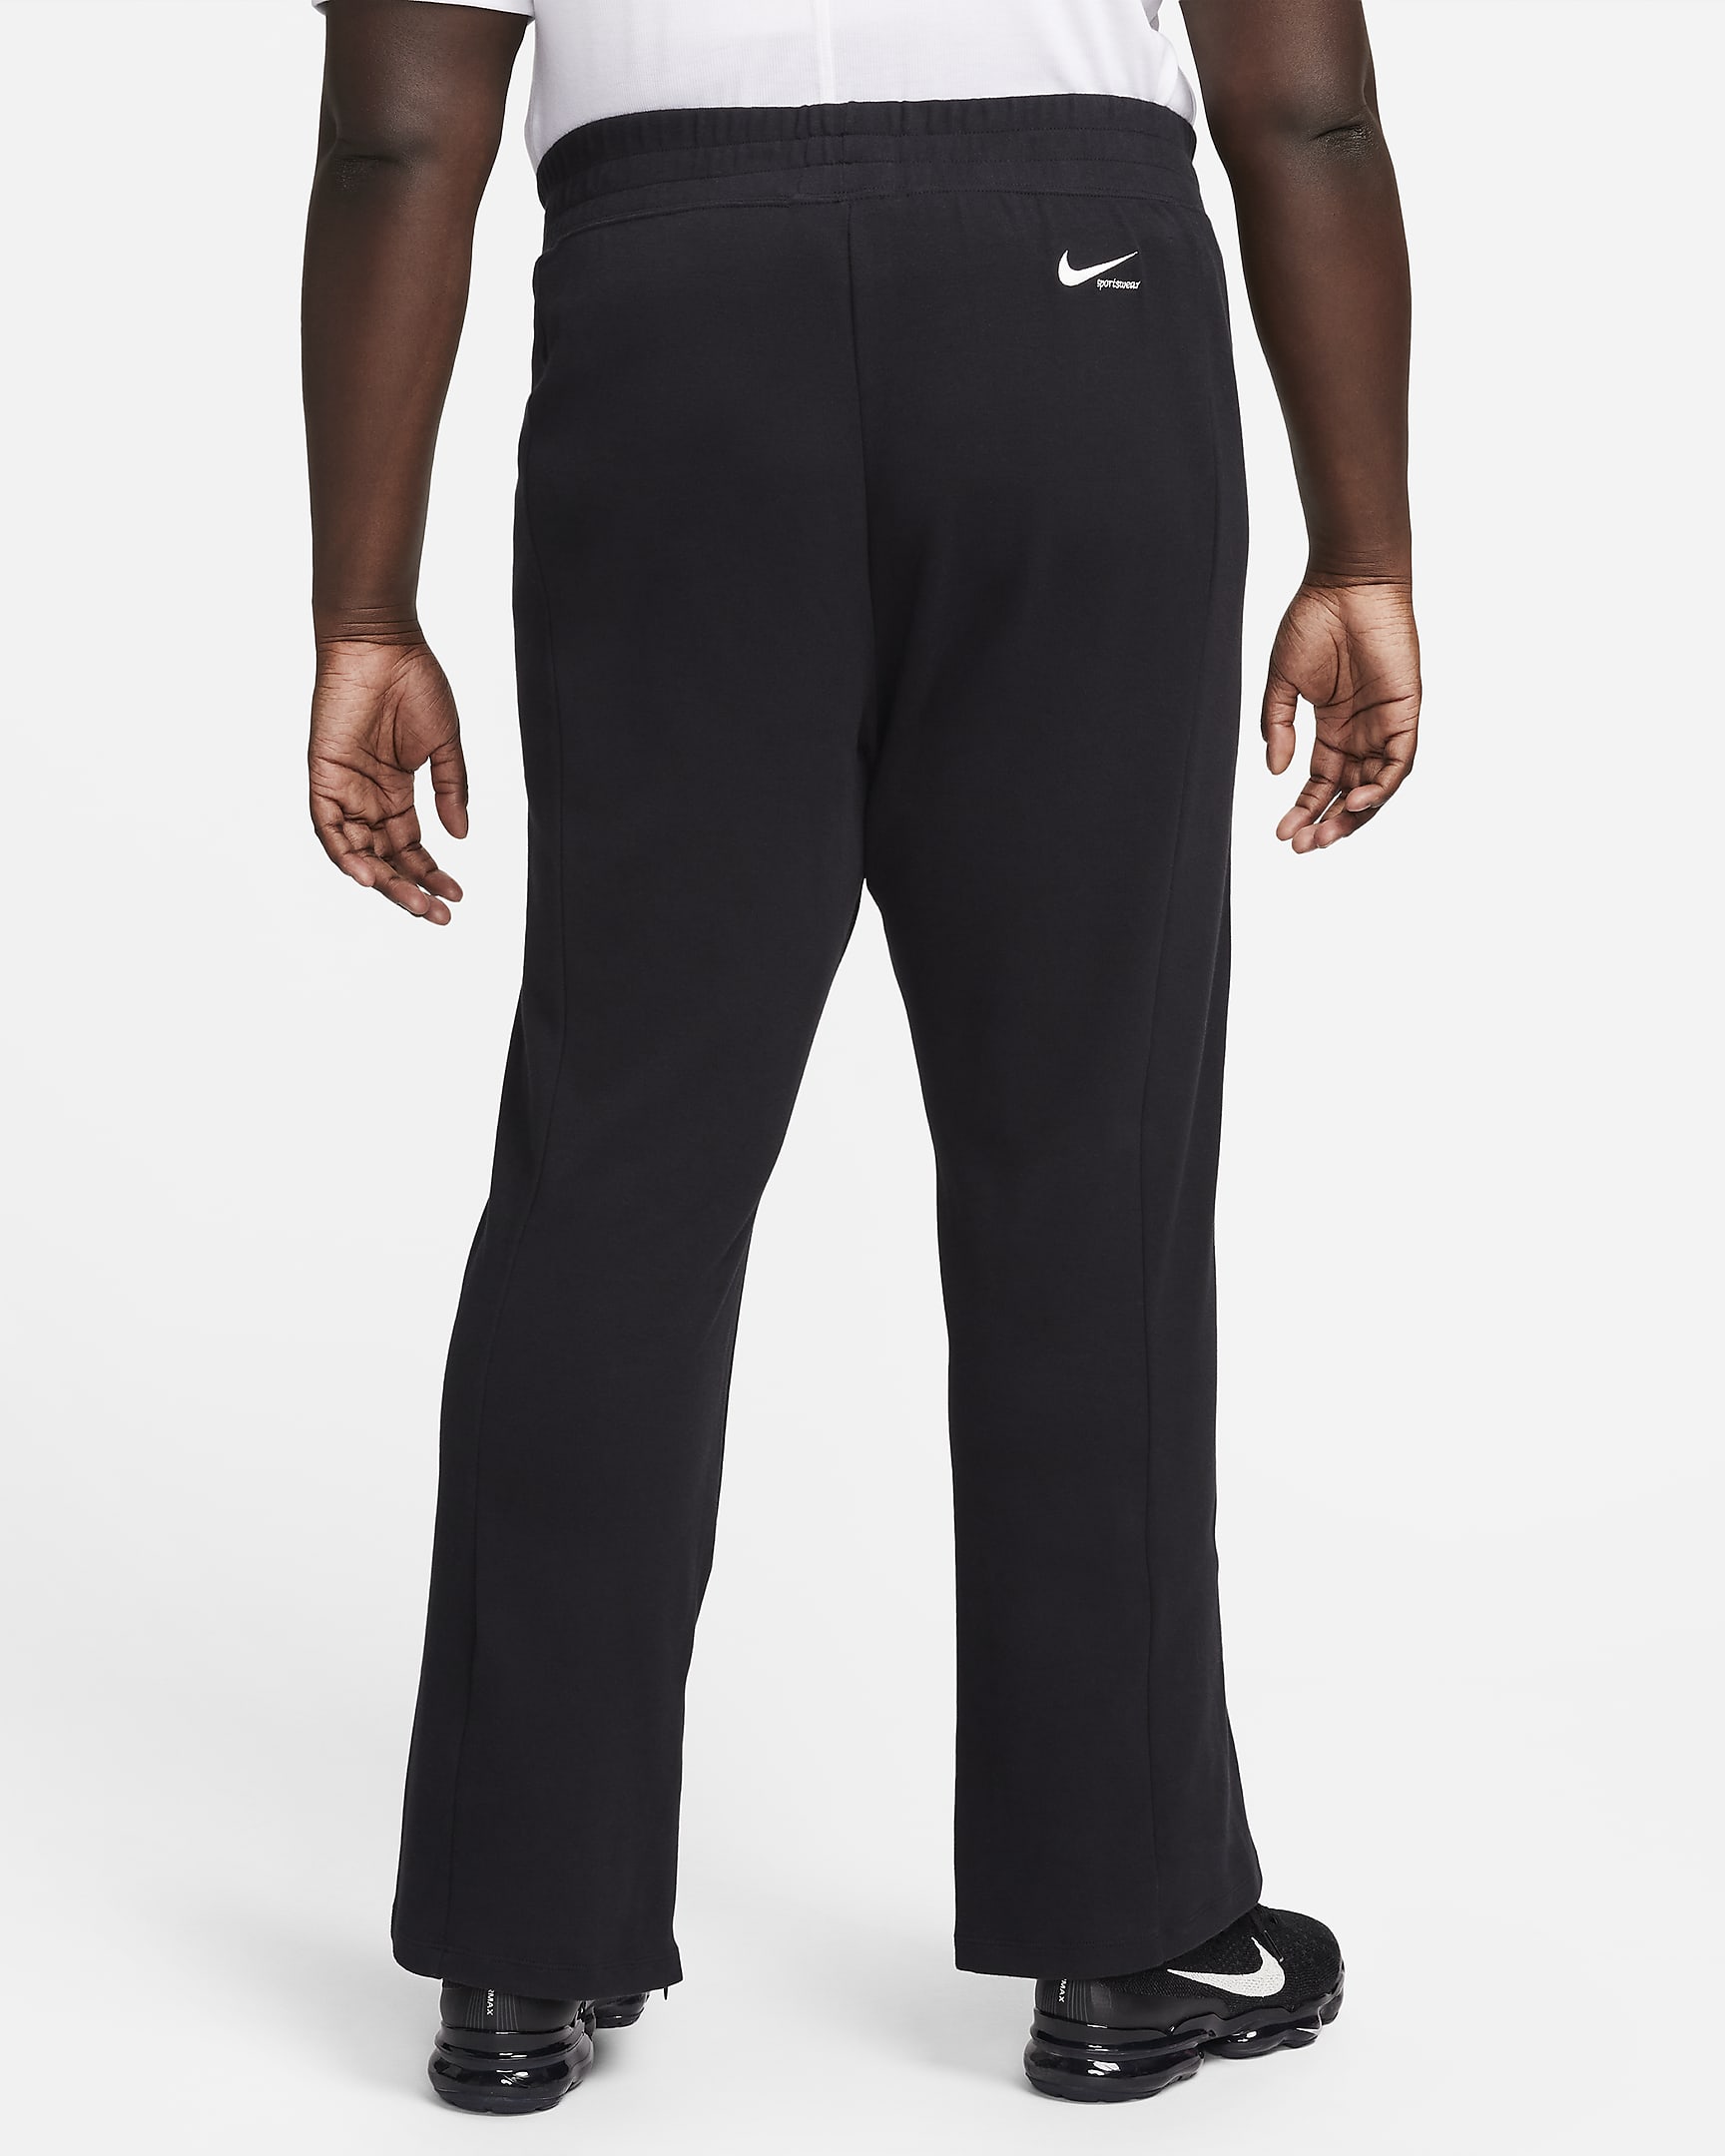 Nike Sportswear Collection Women's Slit-Hem Trousers (Plus Size). Nike HU